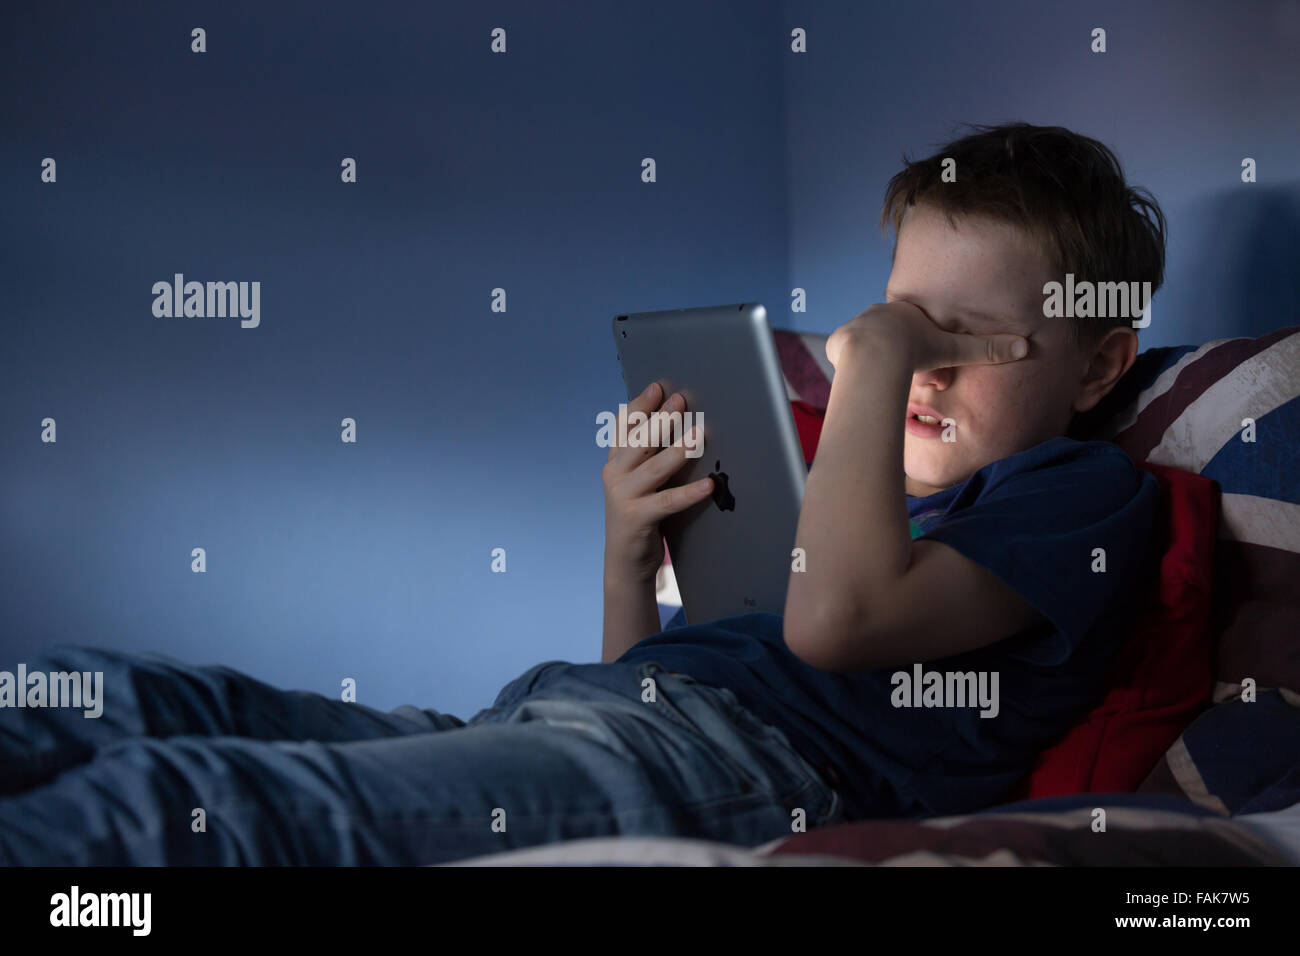 El acoso en línea Cyber Bullying foto de un malestar del muchacho en su habitación mirando mensajes hirientes sobre medios de comunicación social Foto de stock